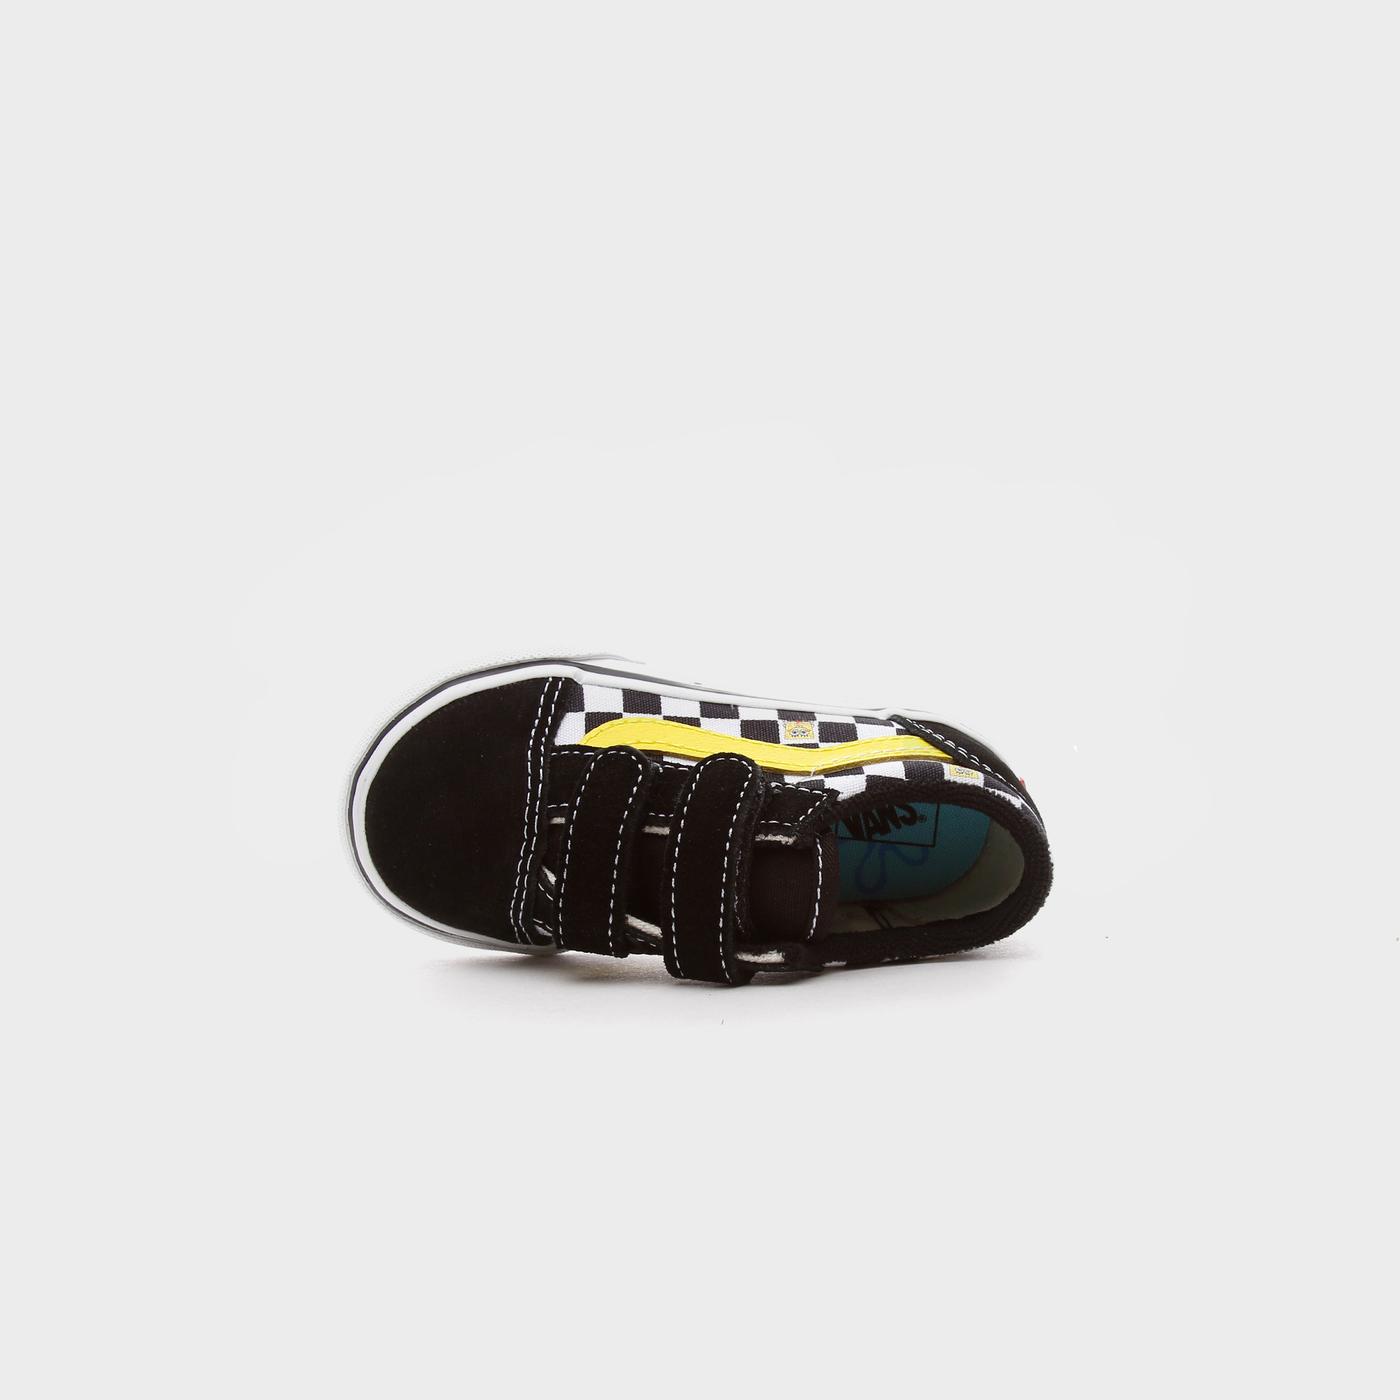 Vans X Spongebob Old Skool Velcro Bebek Siyah Sneakers